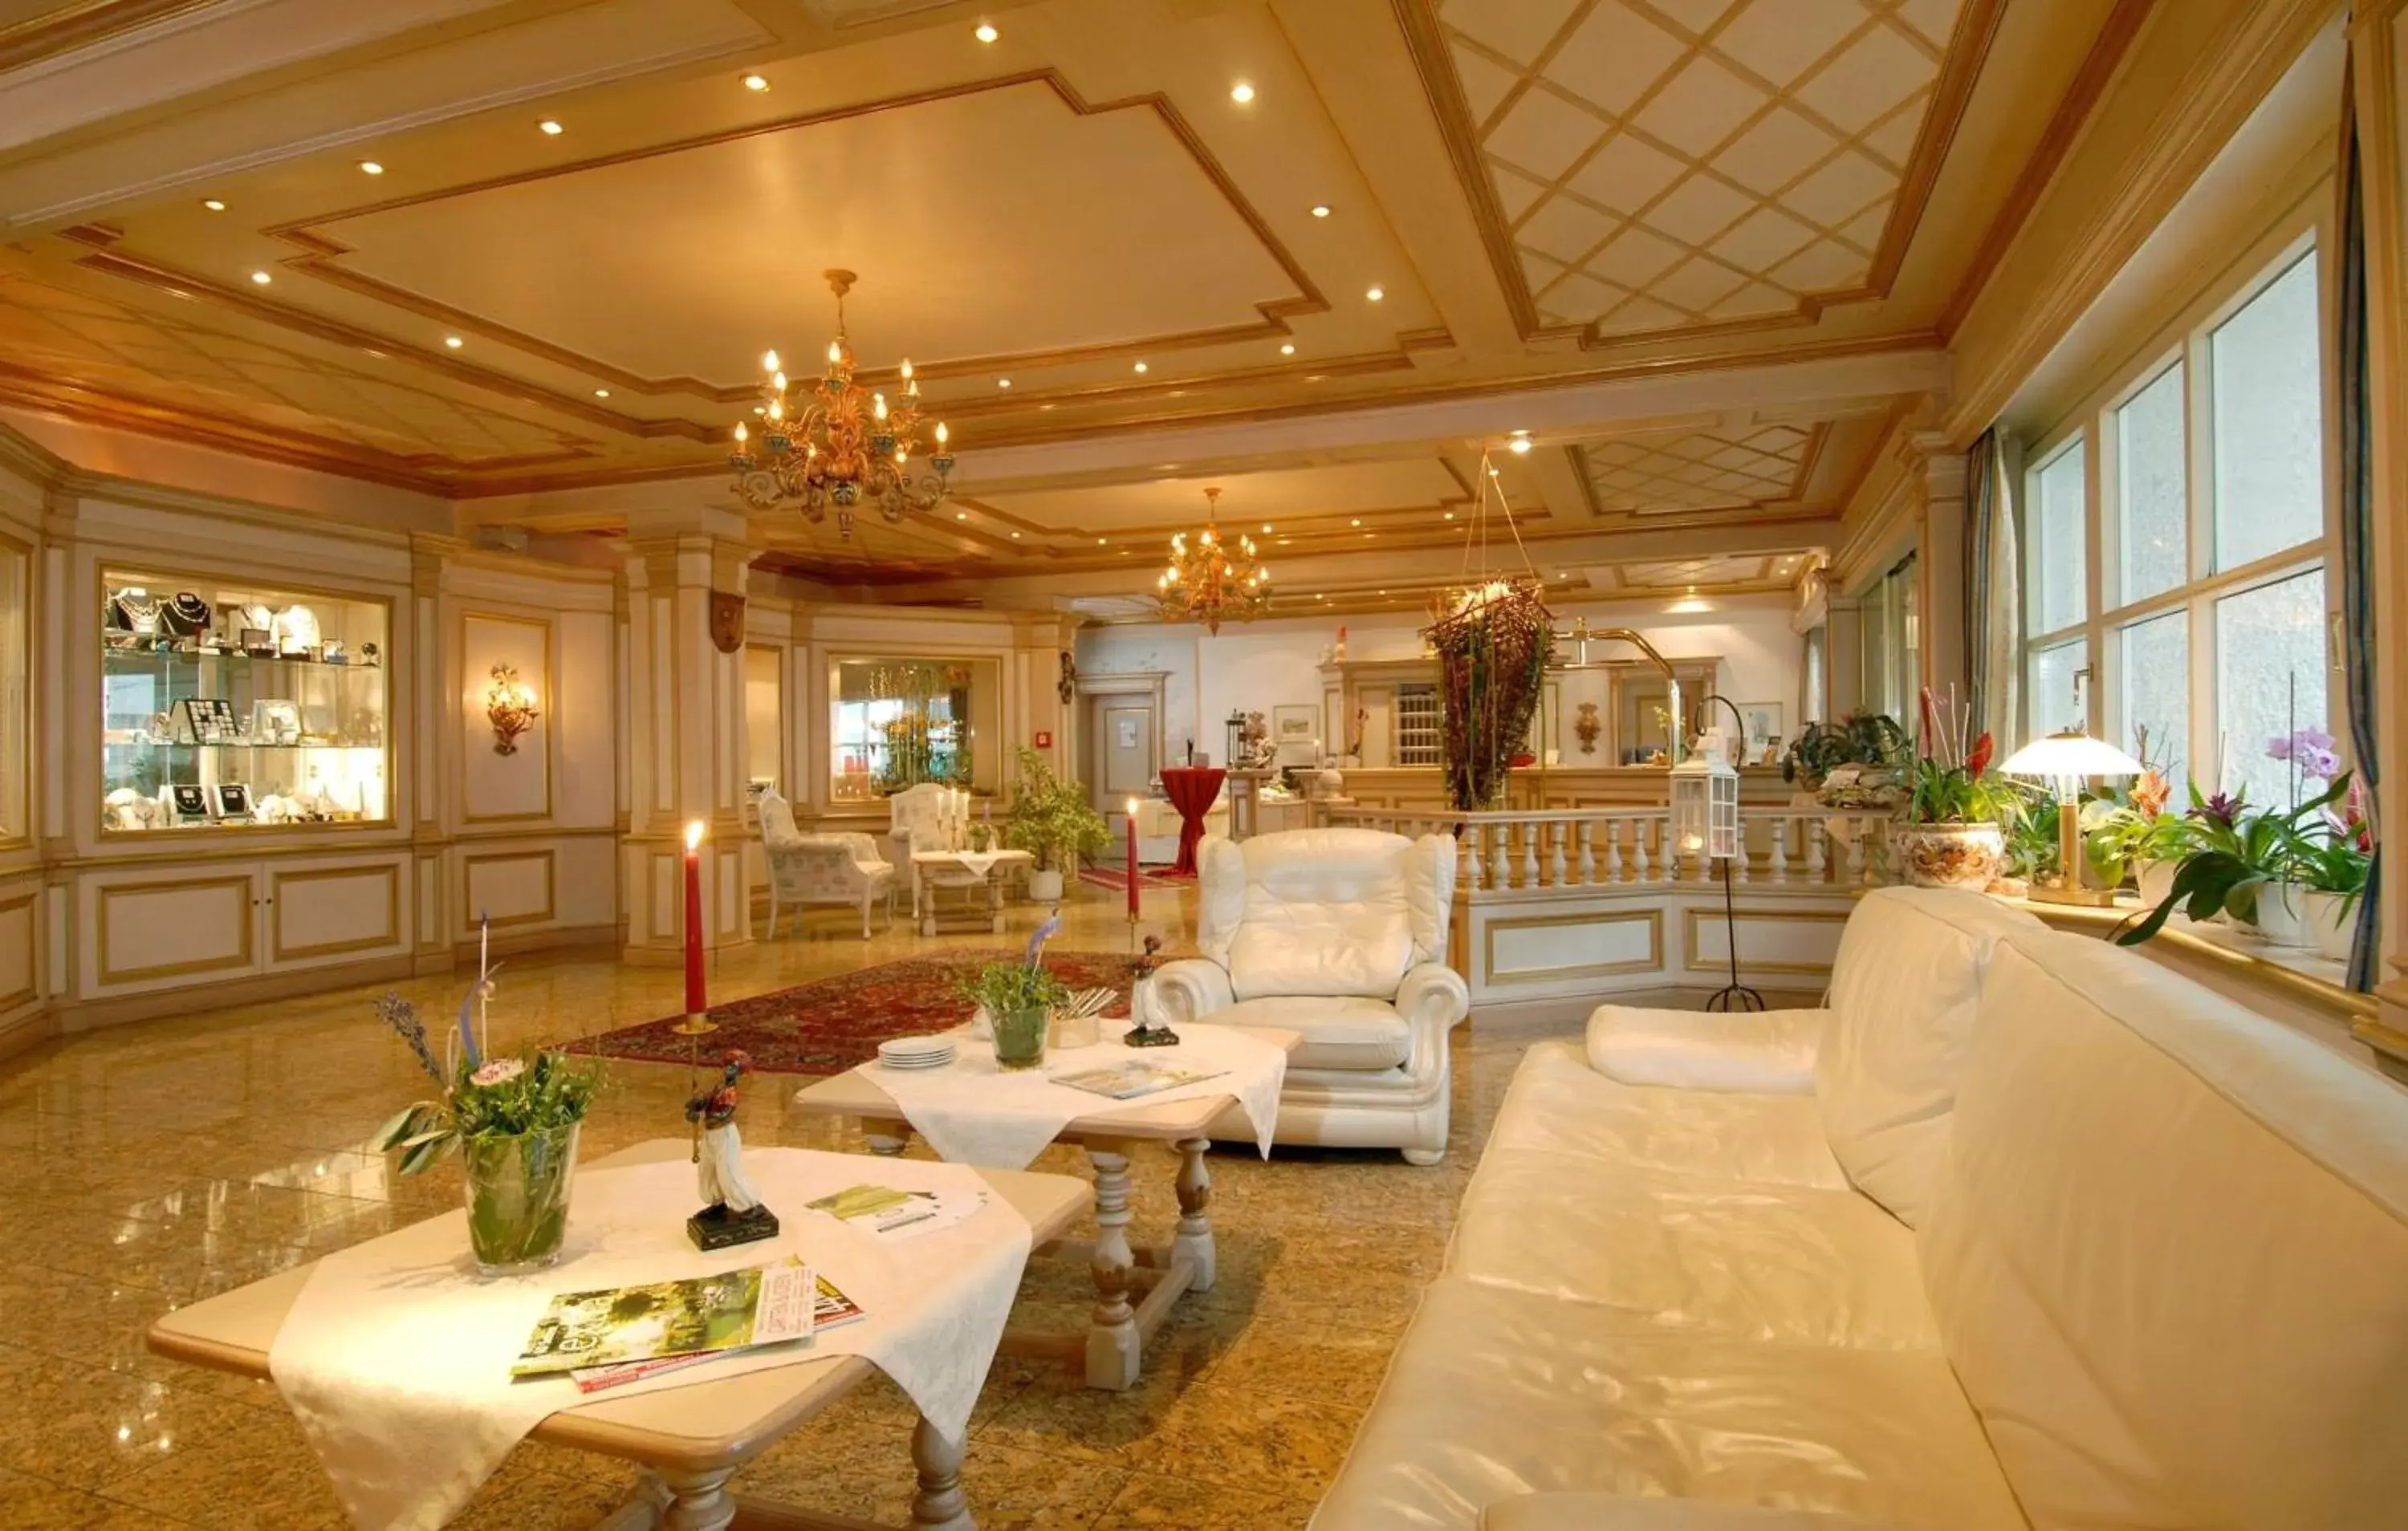 Lobby or reception, Lobby/Reception in Best Western Hotel Rhön Garden